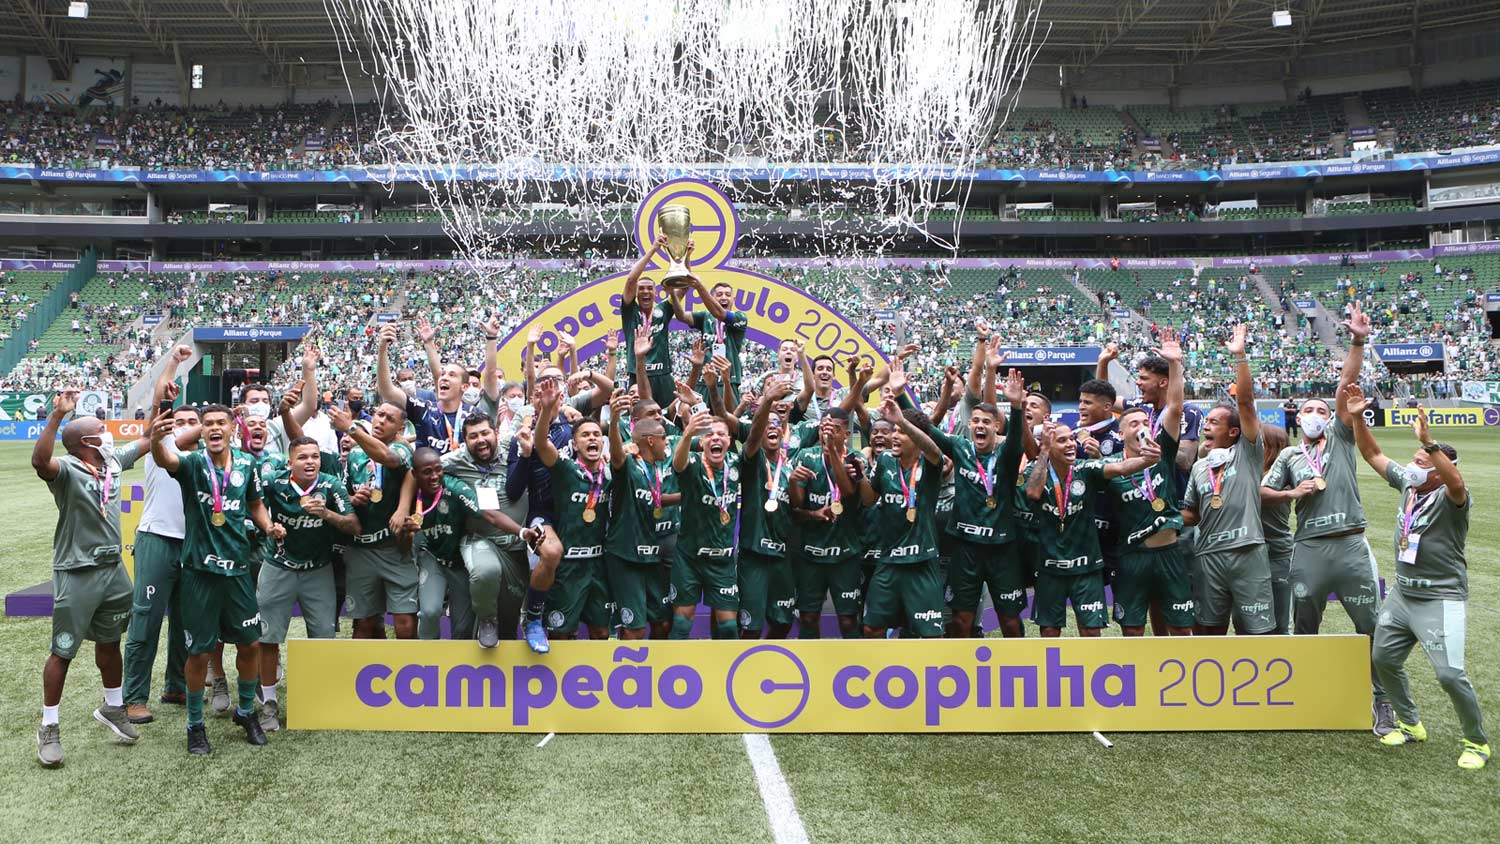 Como o Palmeiras planeja acabar com a música 'não tem Copinha, não